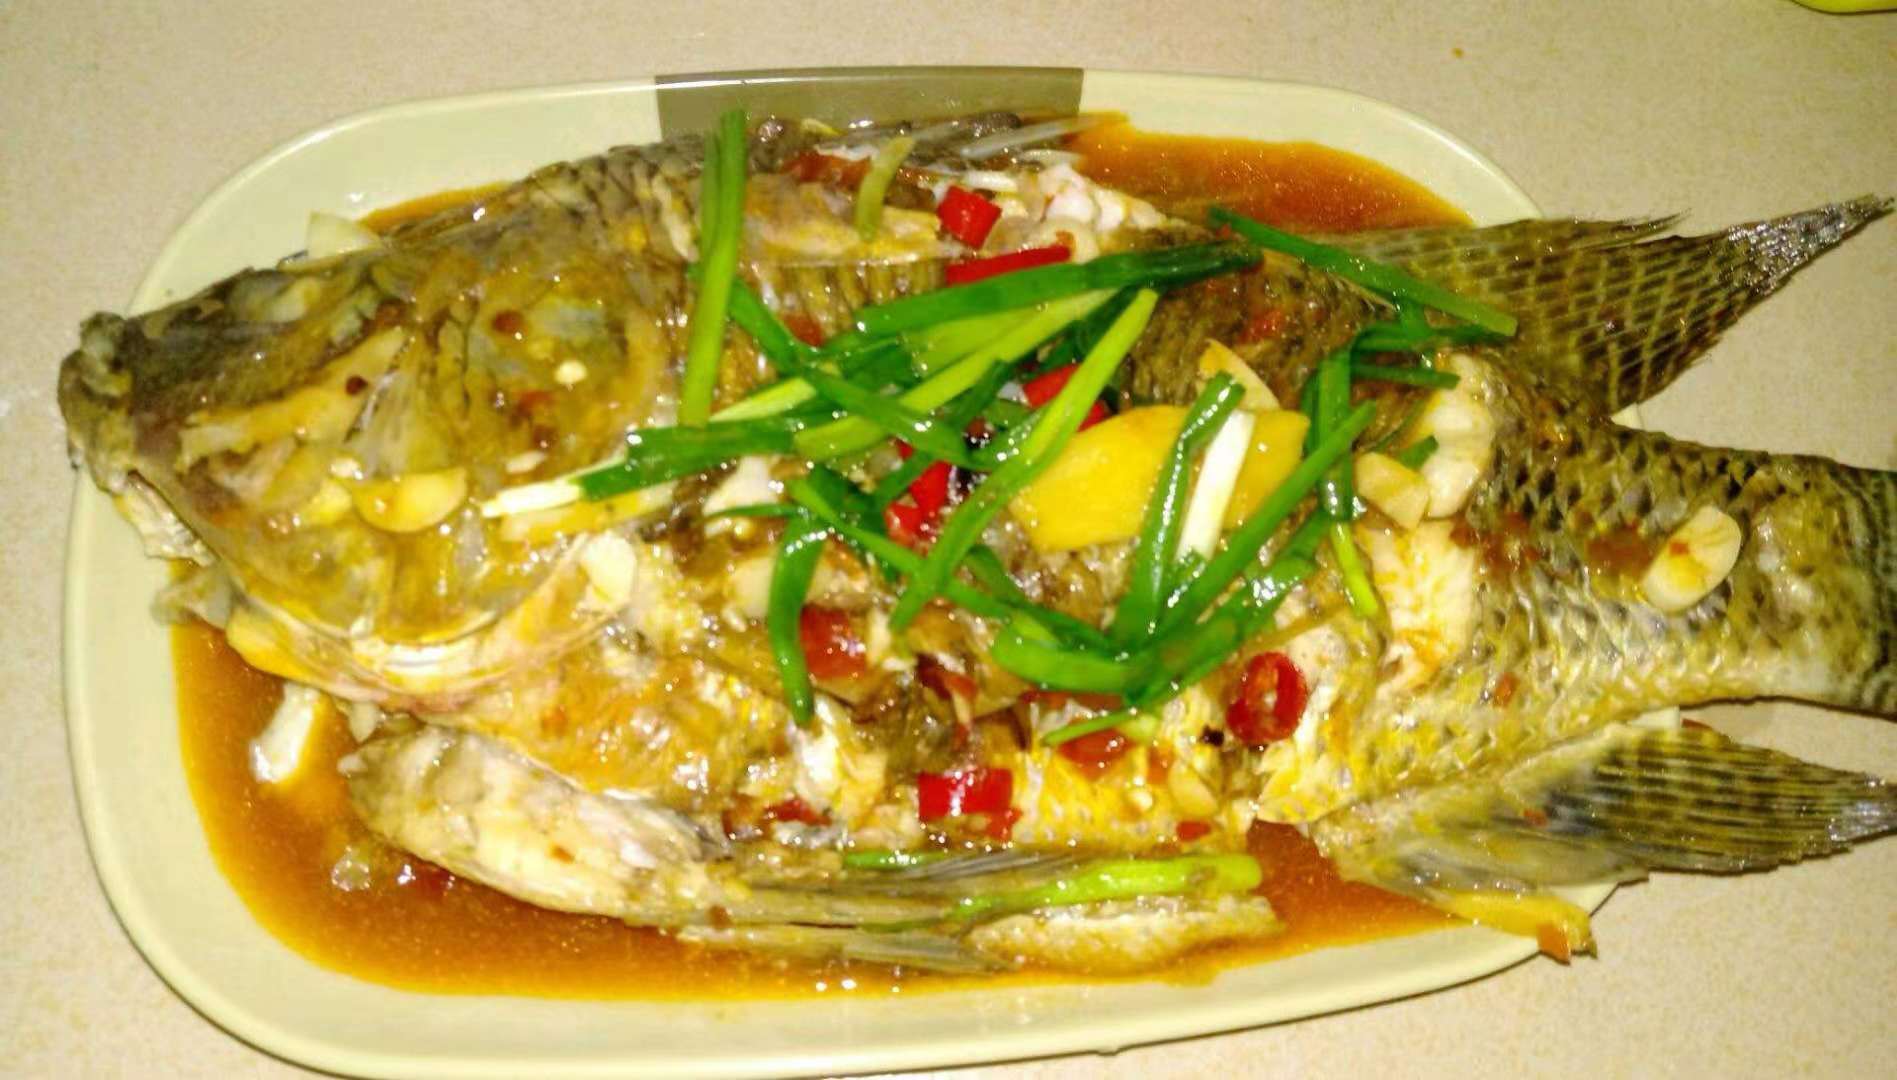 红烧福寿鱼美味又好吃,看到就让你流口水的一块鱼肉美食